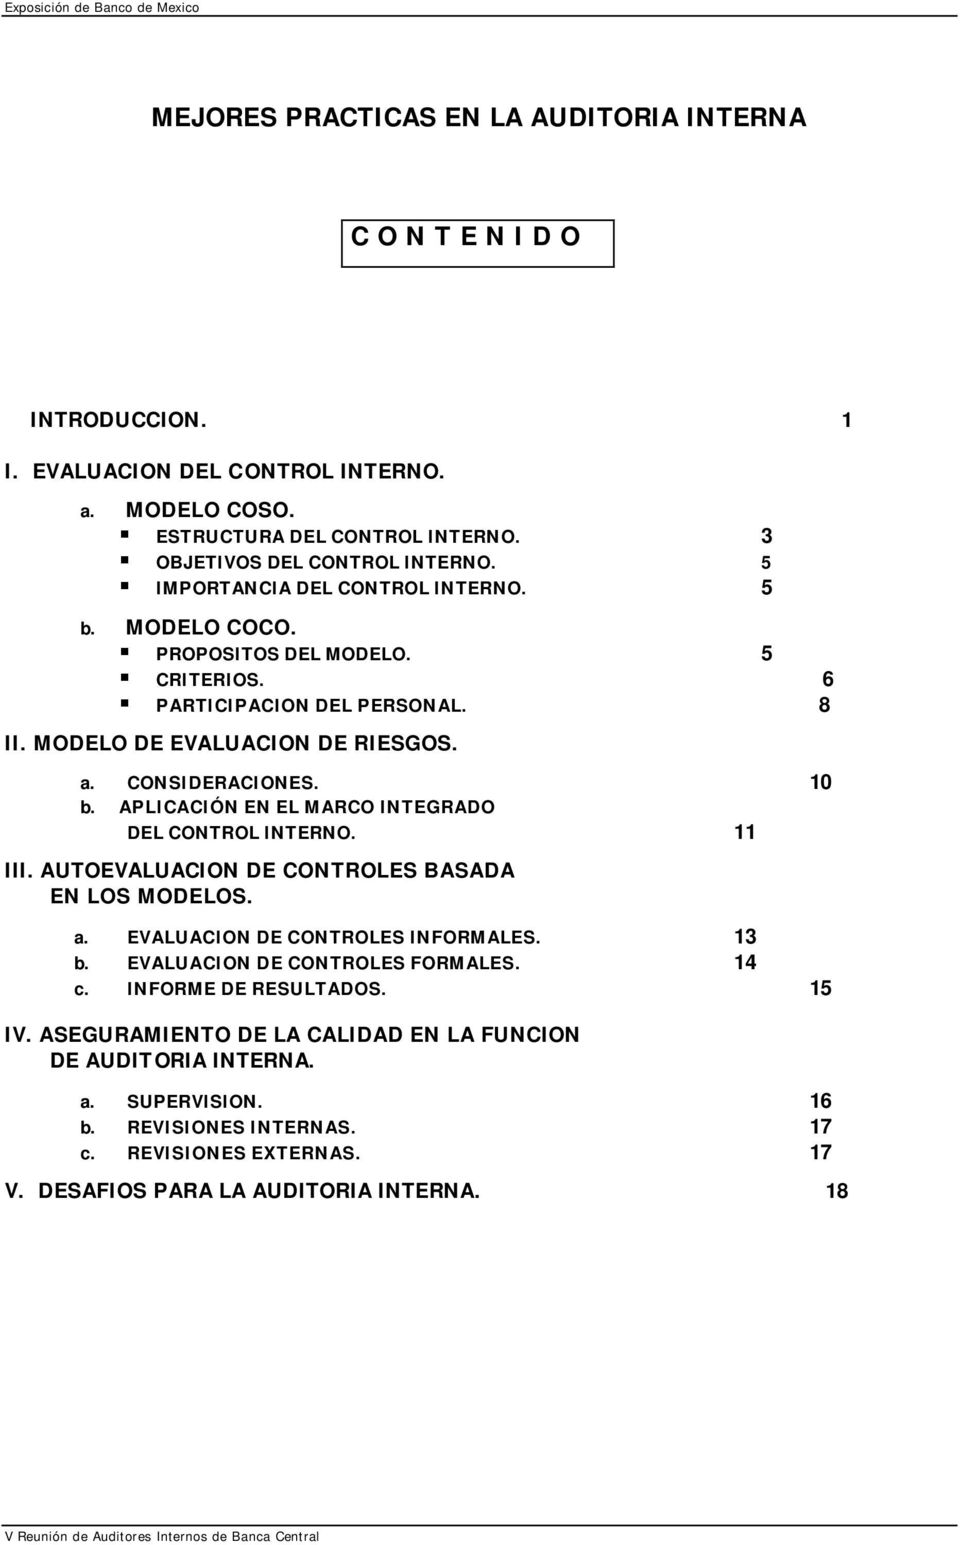 CONSIDERACIONES. 10 b. APLICACIÓN EN EL MARCO INTEGRADO DEL CONTROL INTERNO. 11 III. AUTOEVALUACION DE CONTROLES BASADA EN LOS MODELOS. a. EVALUACION DE CONTROLES INFORMALES. 13 b.